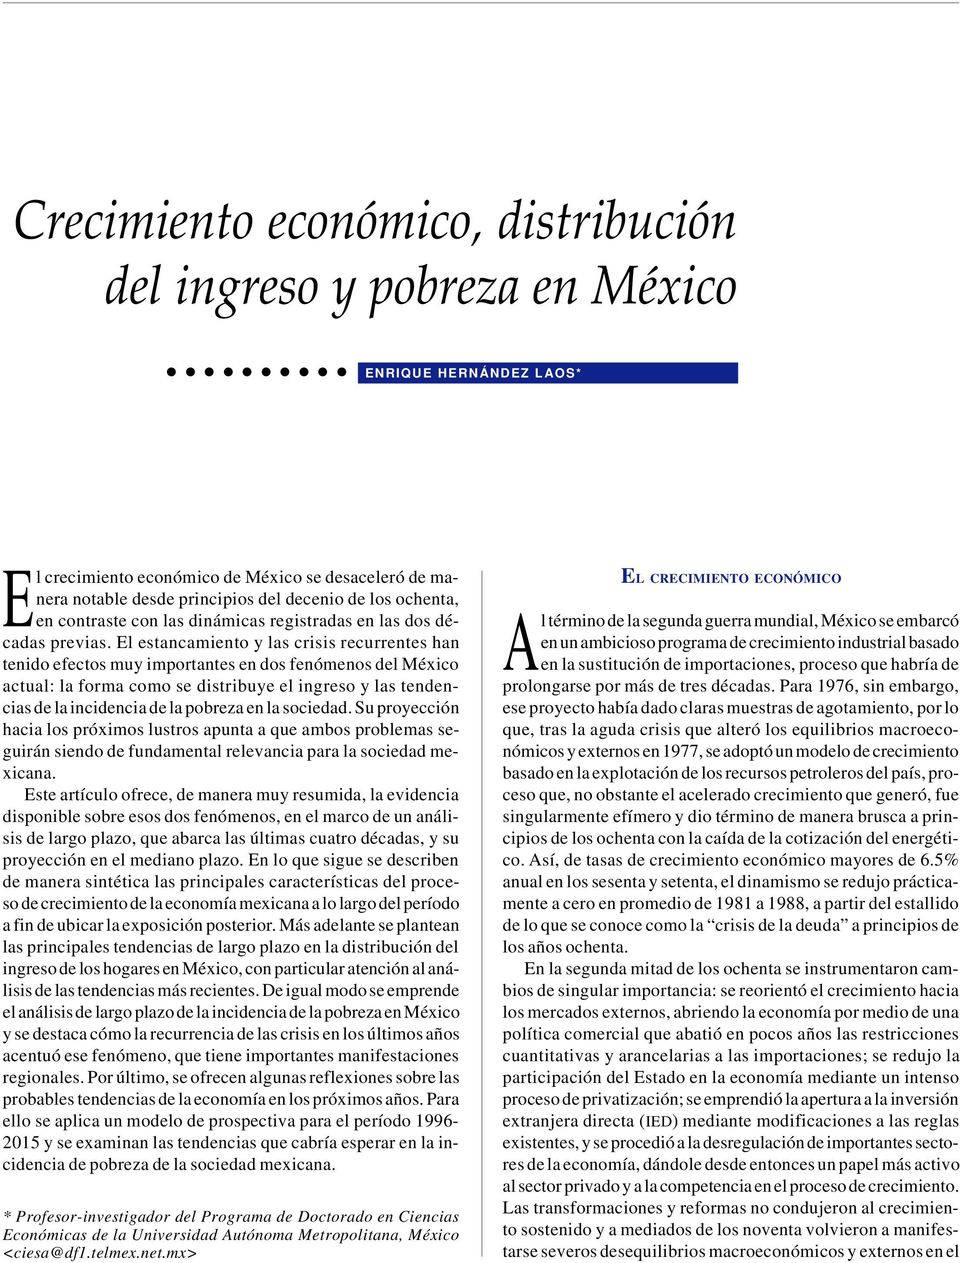 El estancamiento y las crisis recurrentes han tenido efectos muy importantes en dos fenómenos del México actual: la forma como se distribuye el ingreso y las tendencias de la incidencia de la pobreza